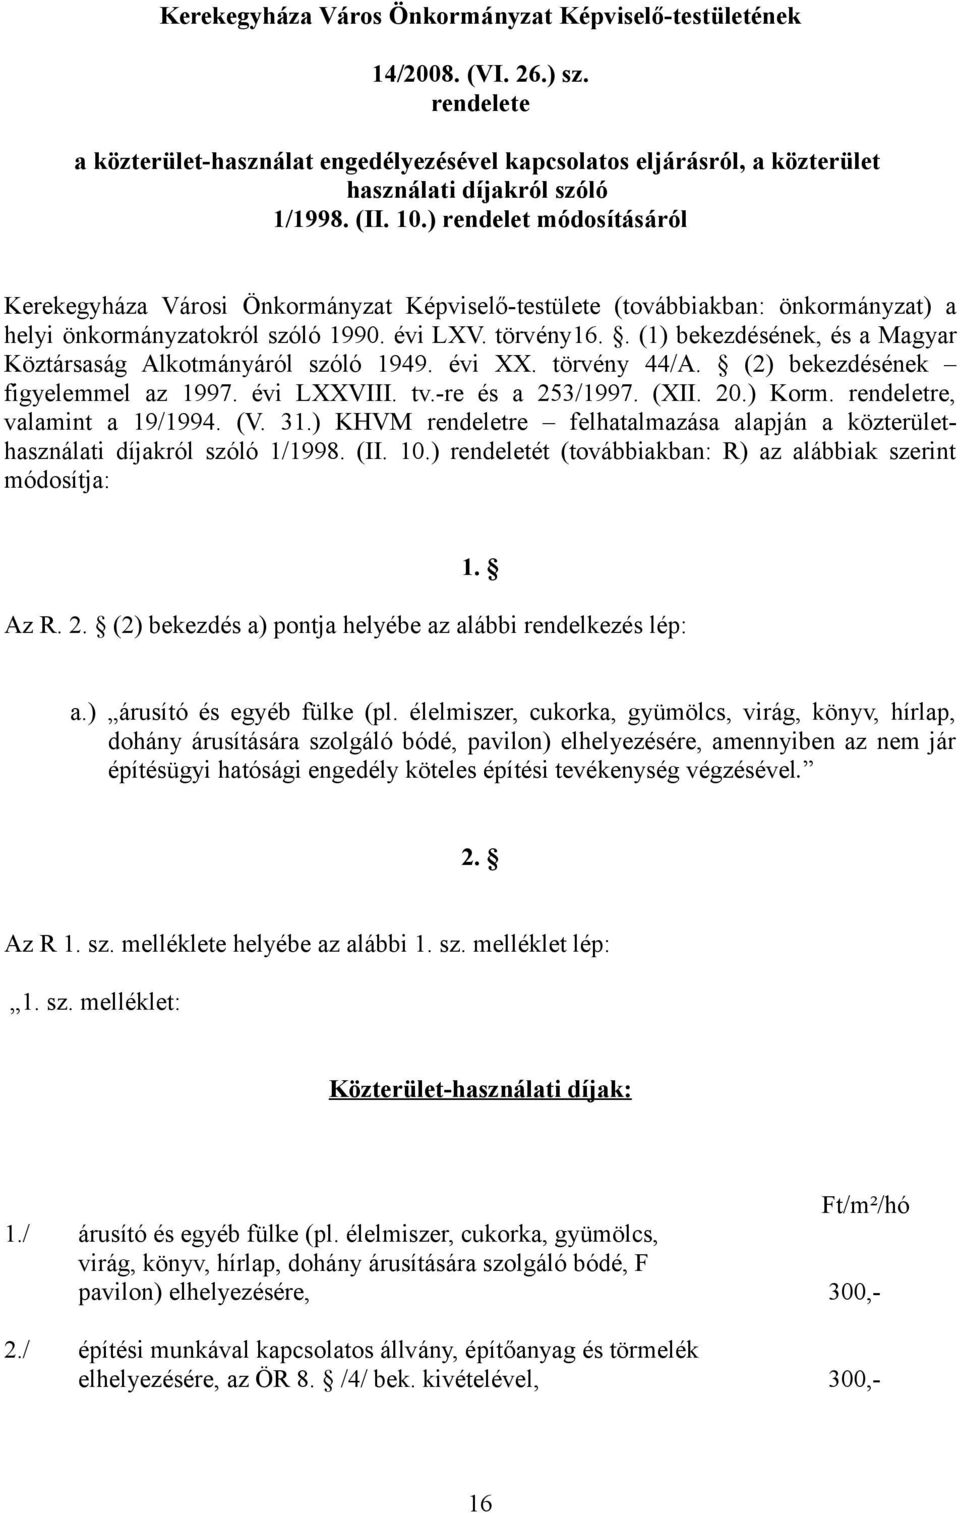 . (1) bekezdésének, és a Magyar Köztársaság Alkotmányáról szóló 1949. évi XX. törvény 44/A. (2) bekezdésének figyelemmel az 1997. évi LXXVIII. tv.-re és a 253/1997. (XII. 20.) Korm.